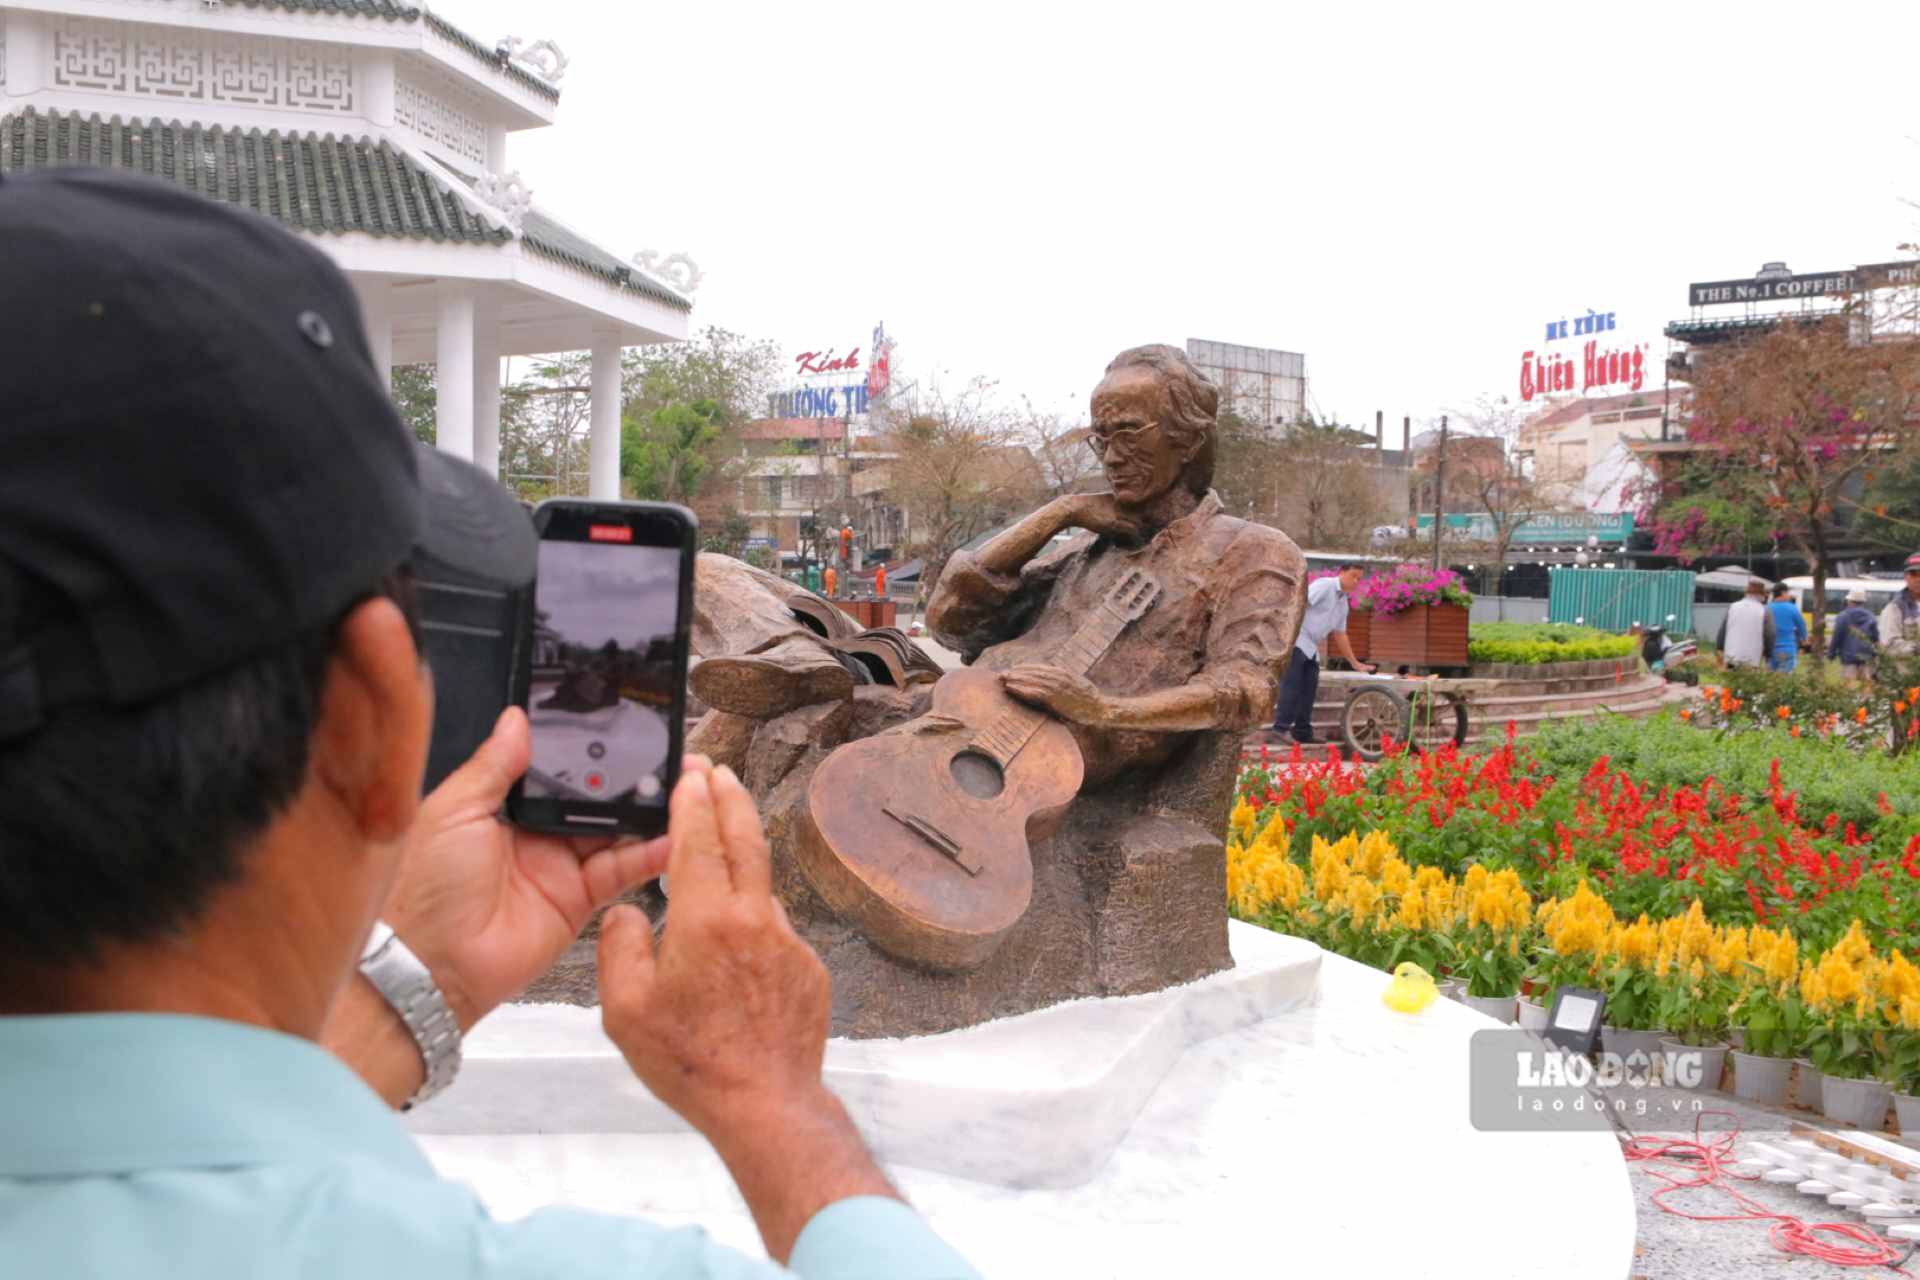 Sau gần một năm chờ đợi hình hài của bức tượng, hiện này tượng đồng của cố nhạc sĩ đã chính thức được lắp đặt, trưng bày tại công viên trên đường Trịnh Công Sơn (phường Gia Hội, TP. Huế) dưới sự chứng kiến của nhiều người dân. 